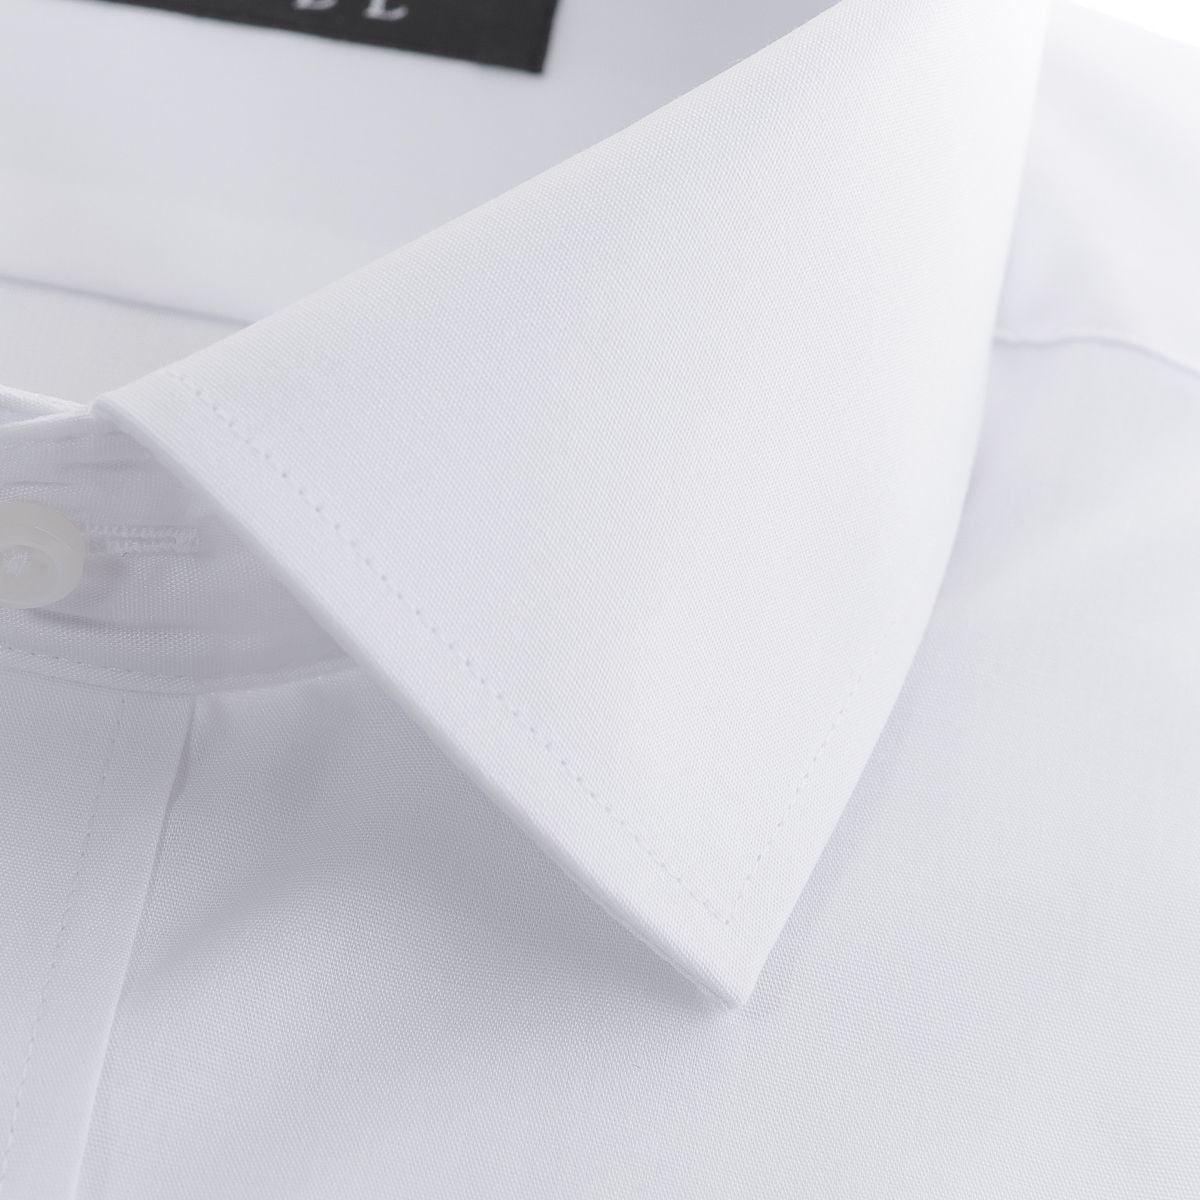 【セミワイド】<br>99.9%ウイルスカット<br>白ワイシャツ 形態安定 長袖